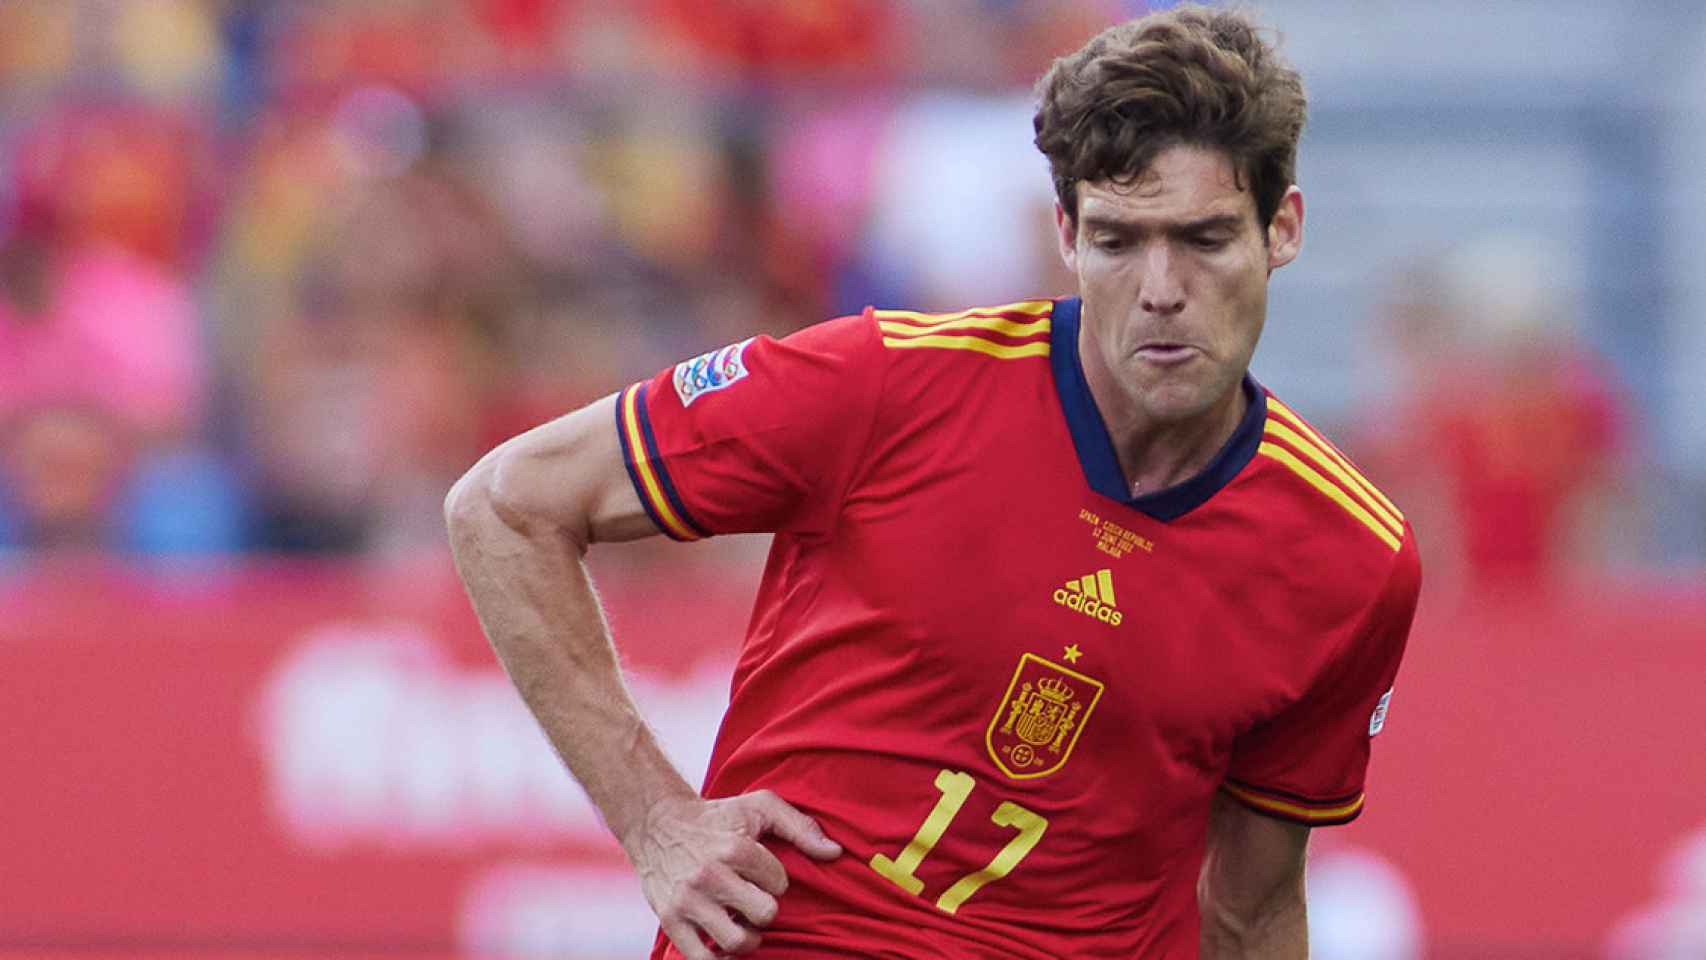 Marcos Alonso Mendoza con la camiseta de la selección española / EUROPA PRESS